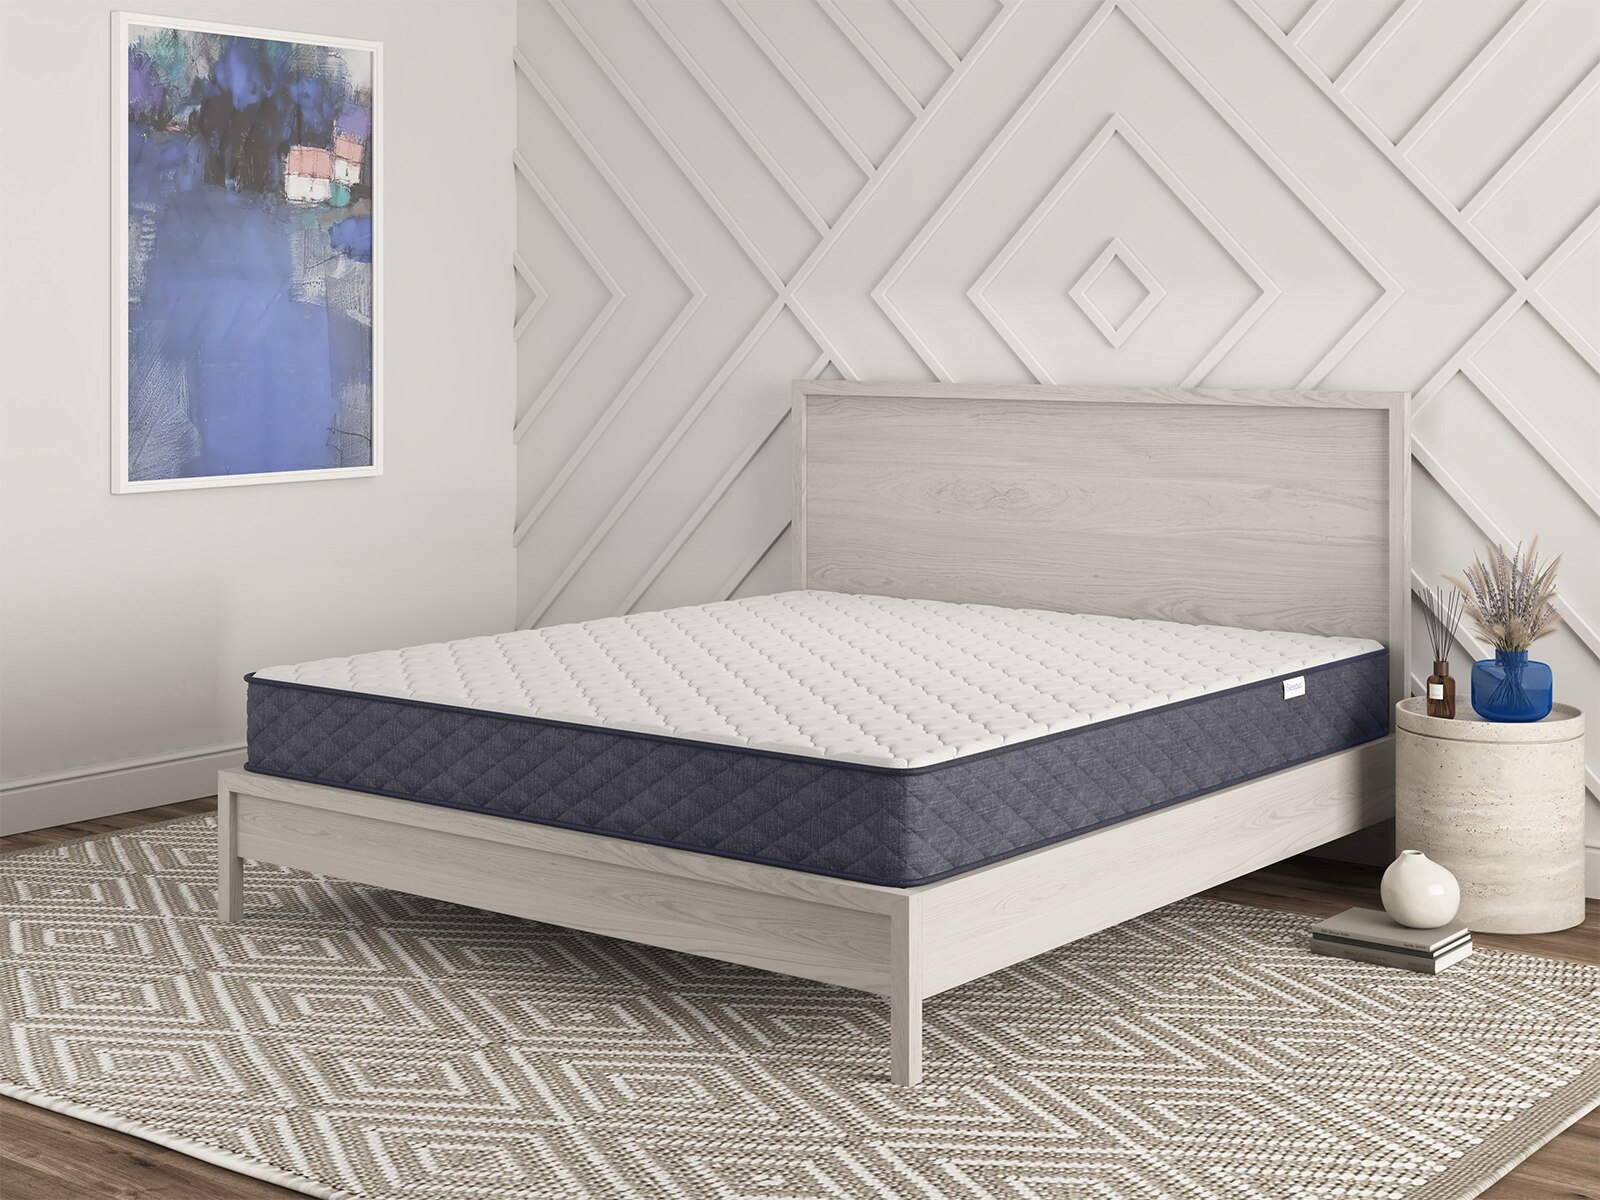 sleepy's rest 10 firm innerspring mattress reviews